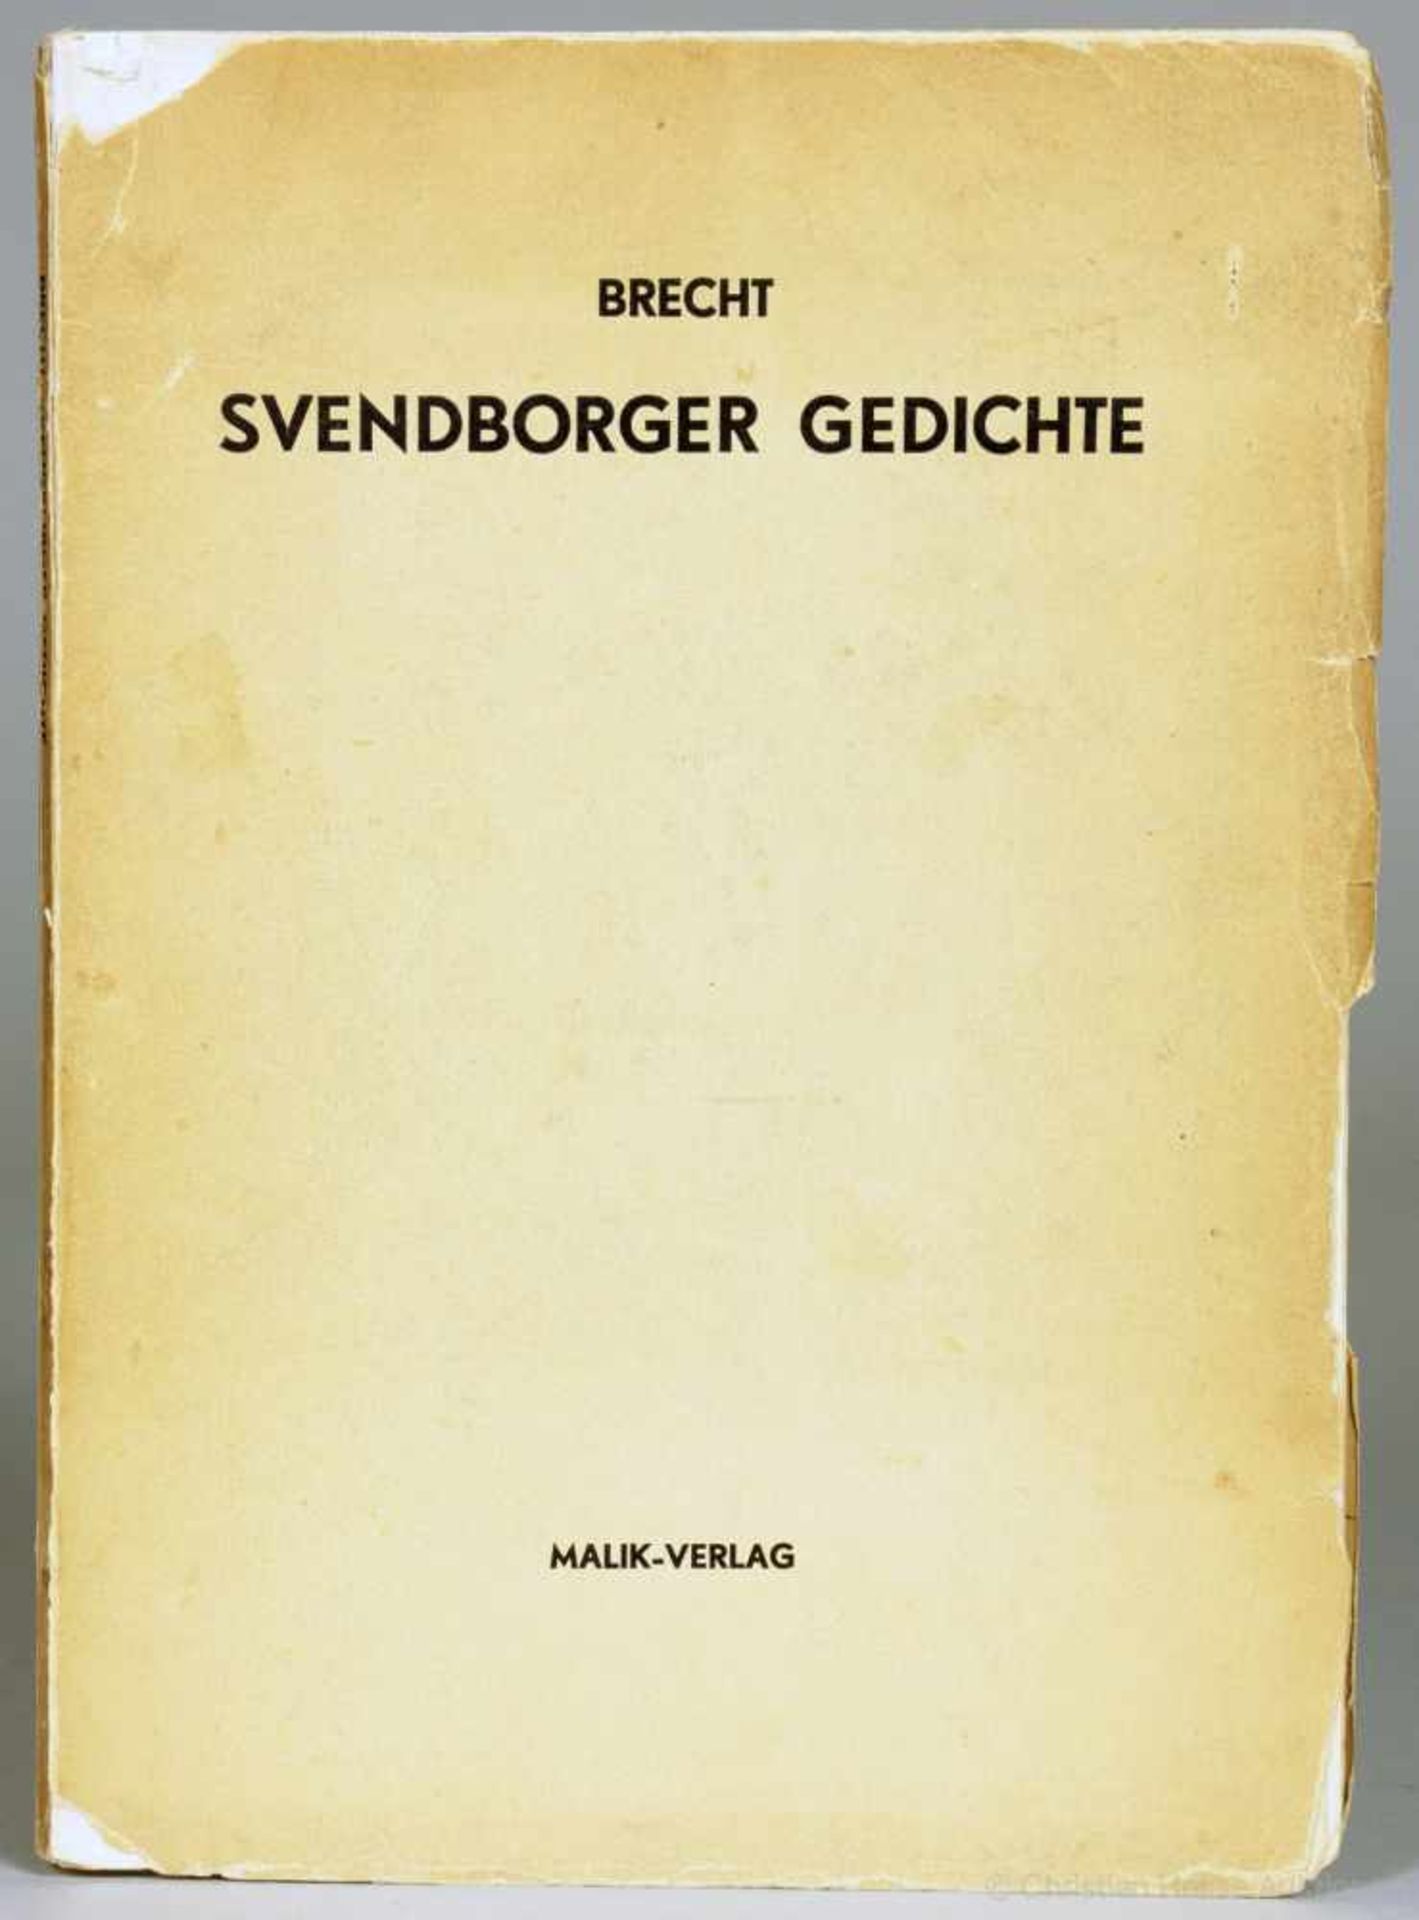 Bertolt Brecht. Svendborger Gedichte. London, Malik 1939. Originalbroschur.Erste Ausgabe. - Eins von - Image 2 of 2